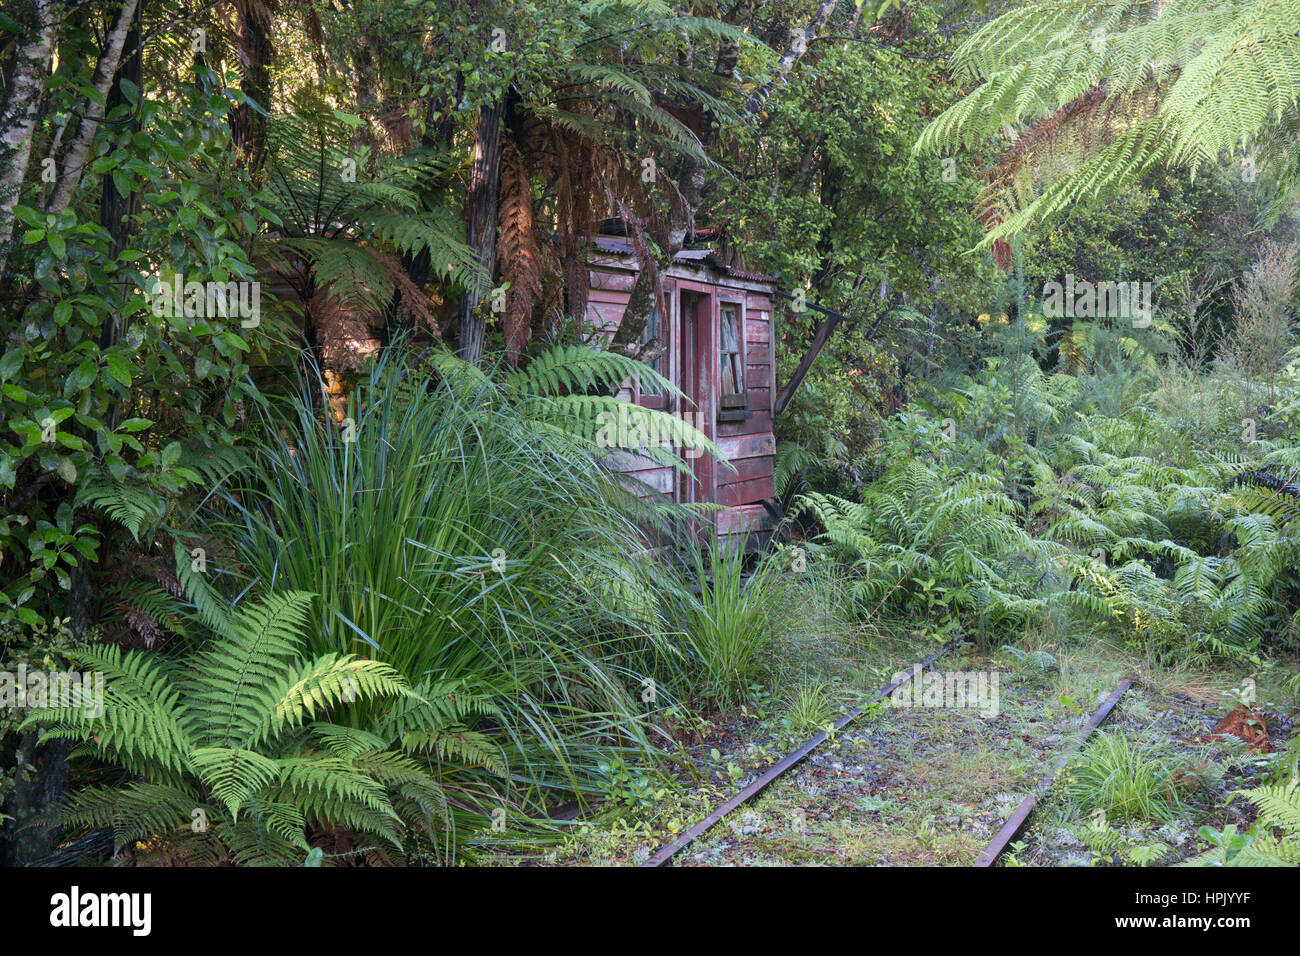 Greymouth, West Coast, New Zealand. Überwucherten Anschlussbahn im Elendsviertel, Erholung von einem 19. Jahrhundert Gold-Bergbausiedlung. Stockfoto